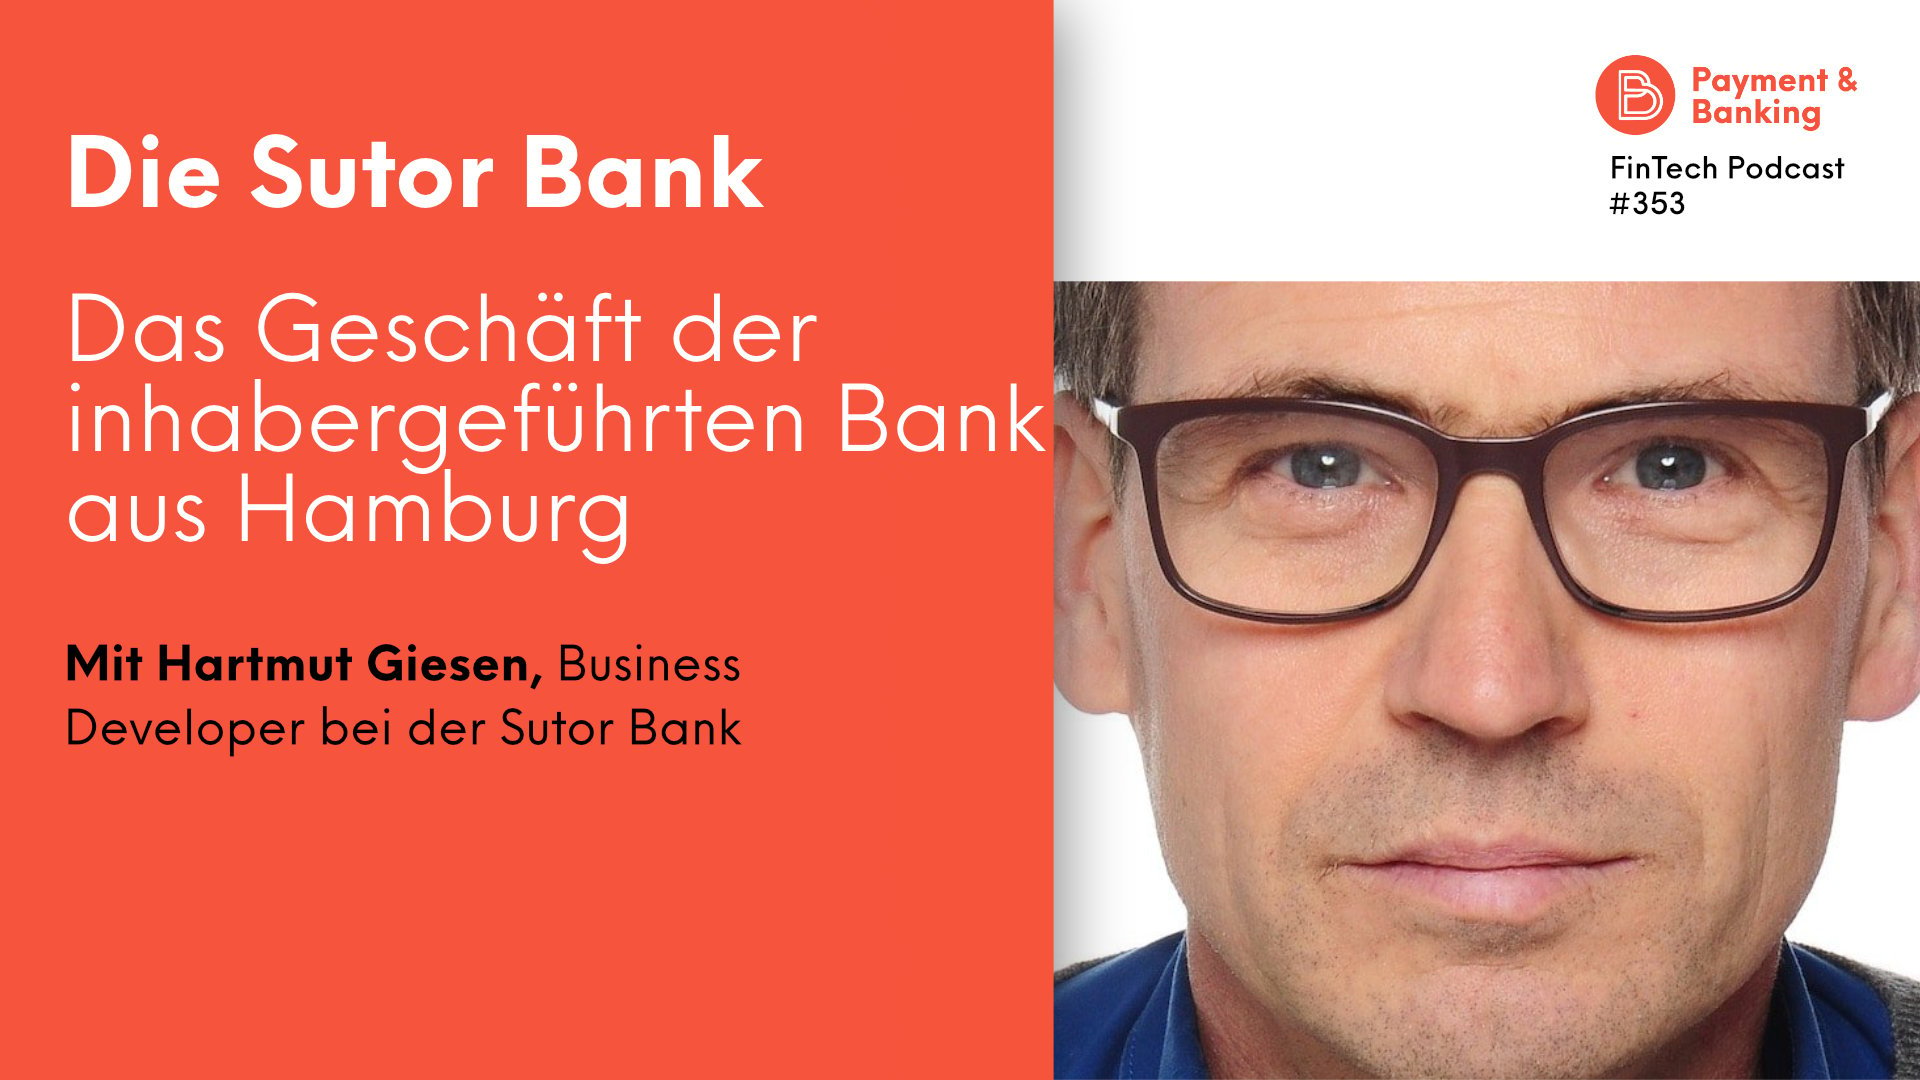 Fintech Podcast Cover #353 Hartmut Giesen Sutor Bank